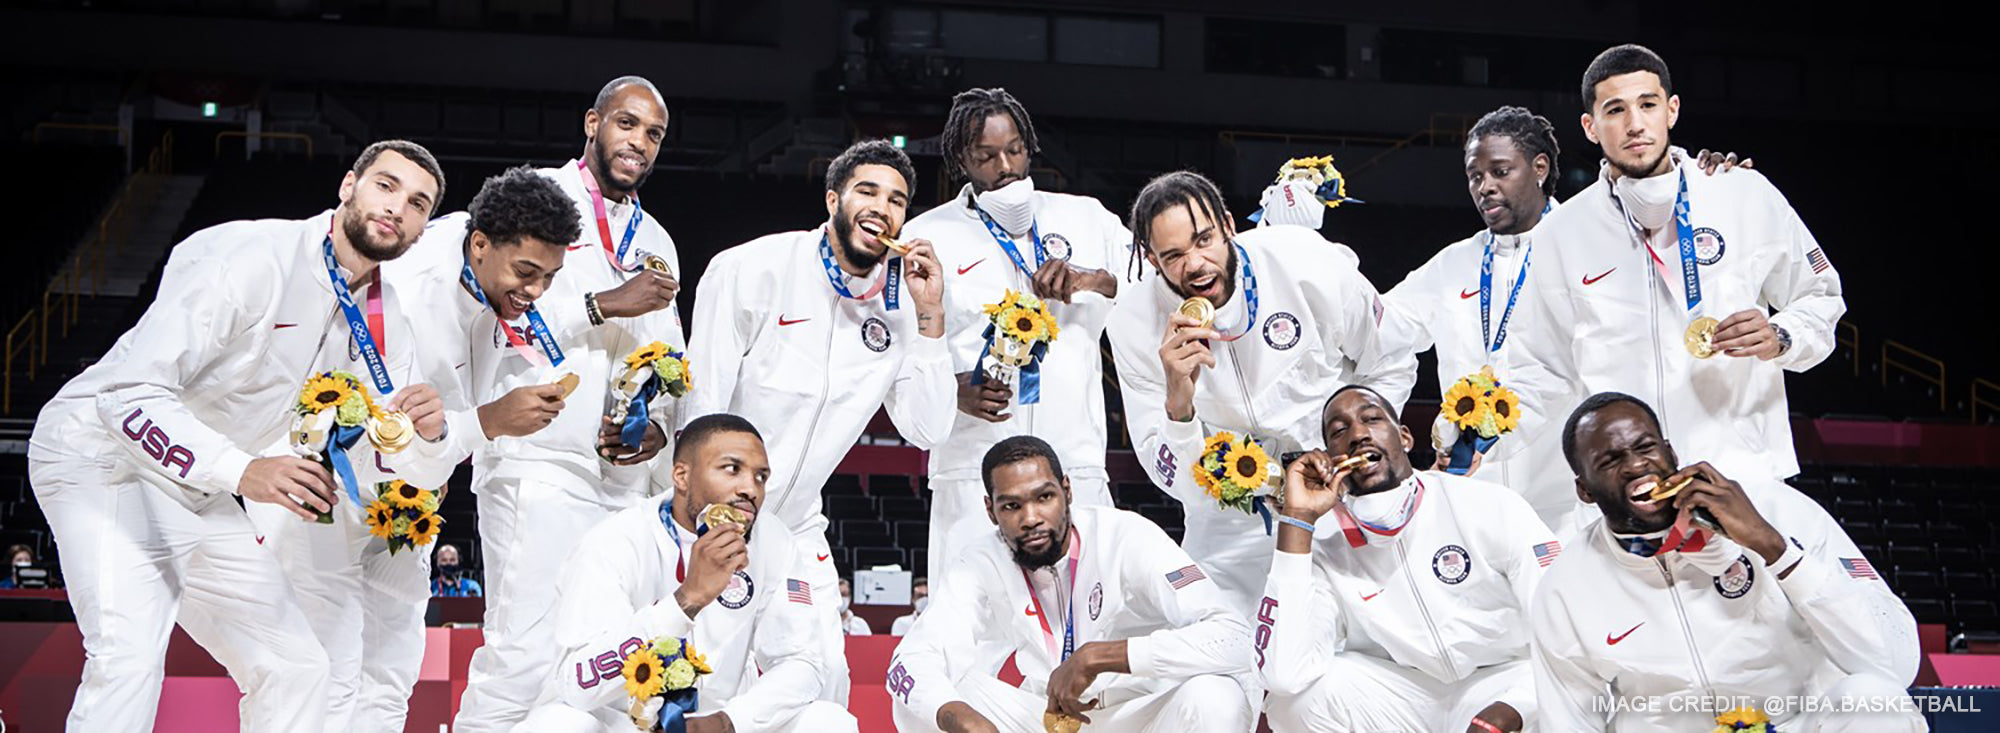 2020年東京奧運會,美國男子籃球隊連續第四次獲得金牌。